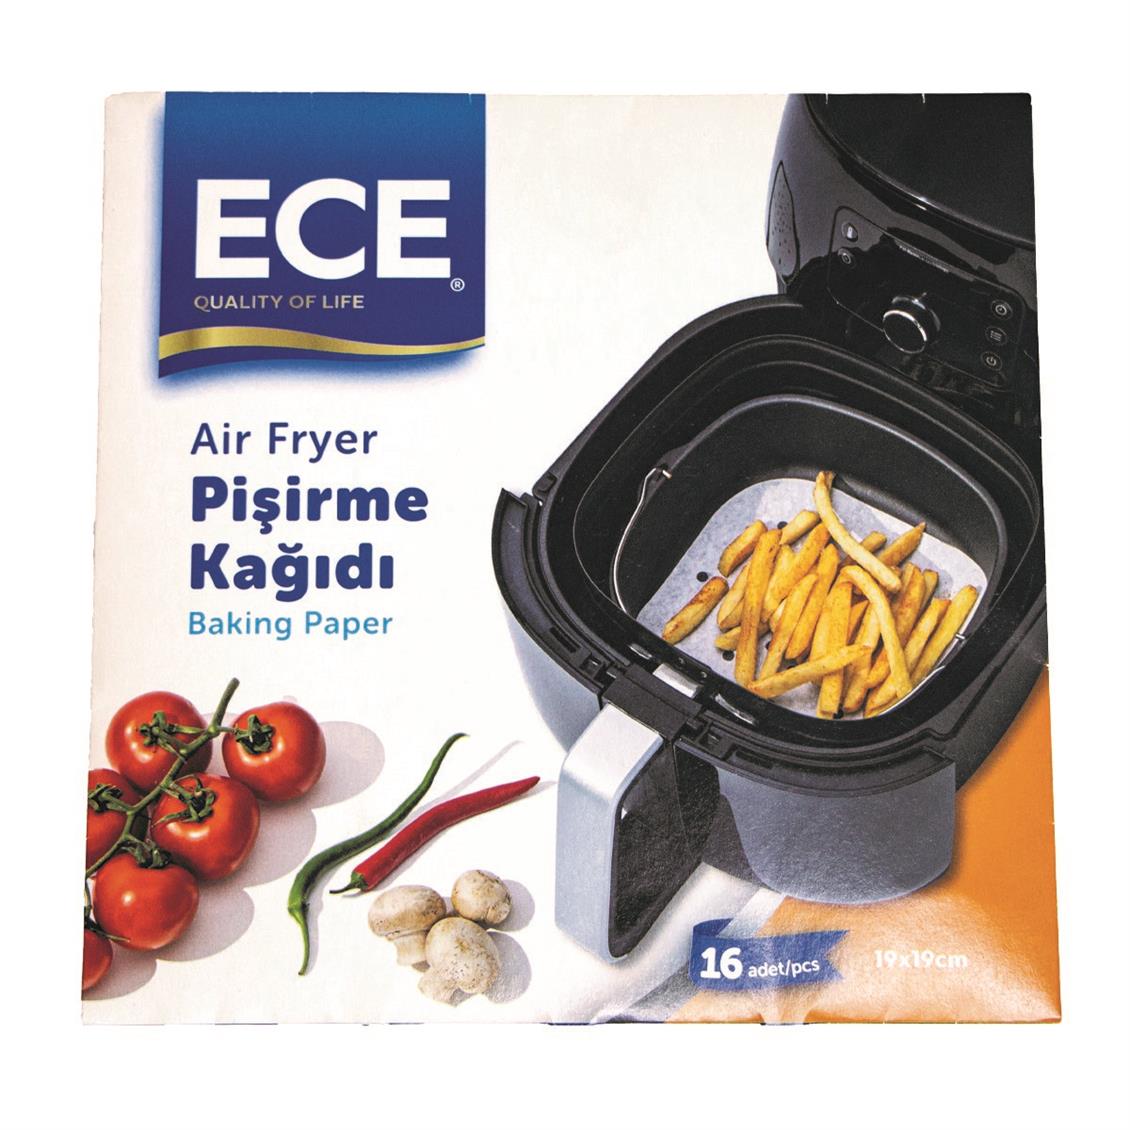 Ece Airfryer Pişirme Kağıdı 16'lı - Onur Market